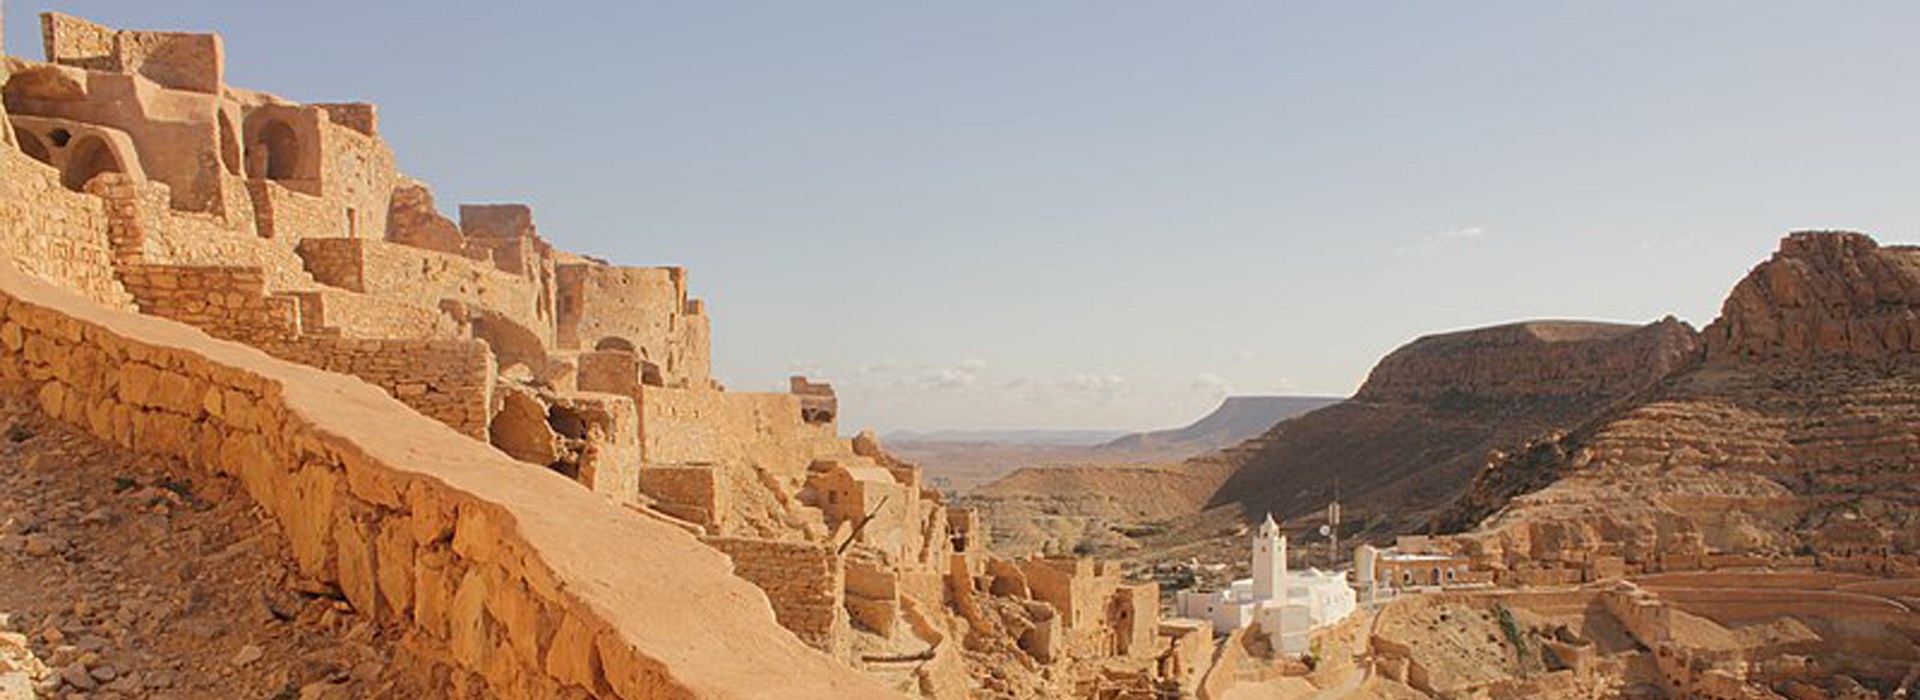 Visiter Chenini - Tunisie